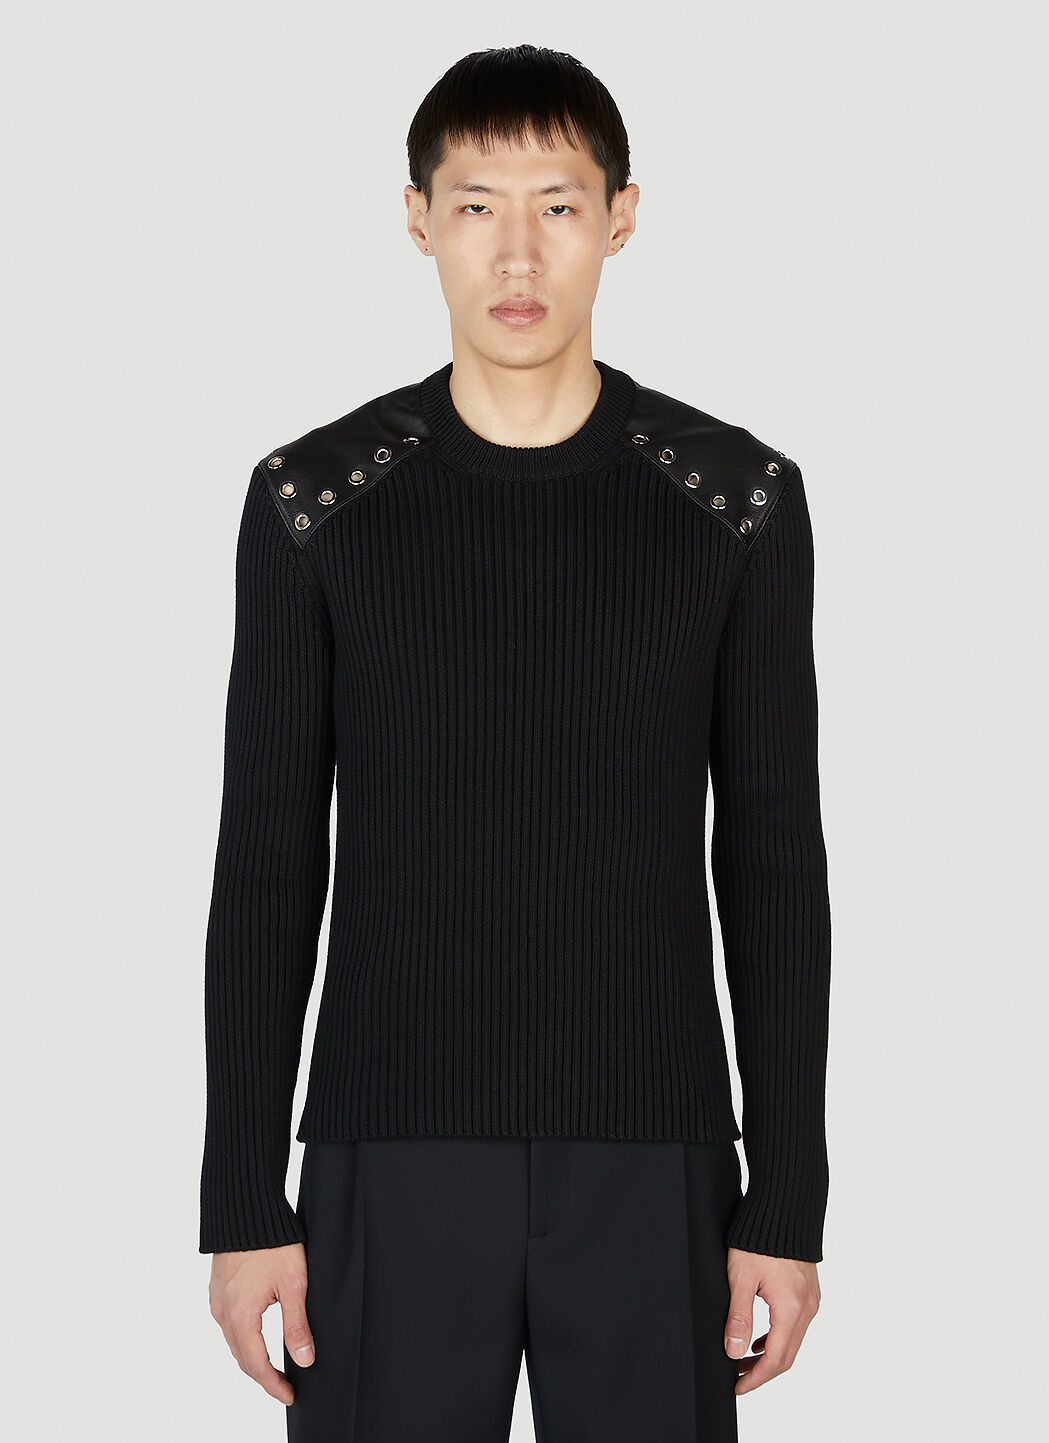 Alexander McQueen 아일릿 스웨터 블랙 amq0152002